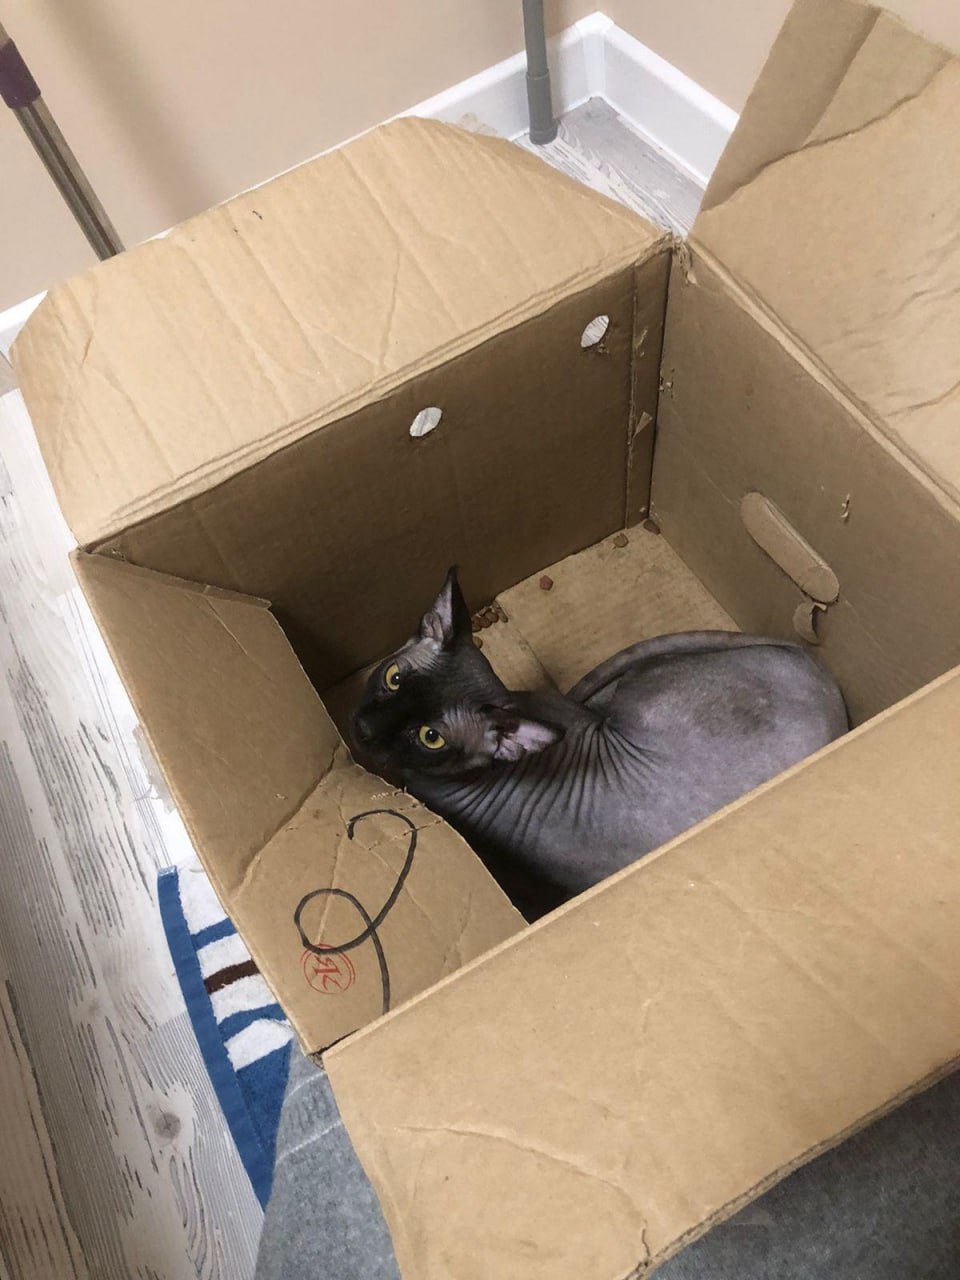 Жестокость, незнающая границ: запечатанного в коробку кота выбросили в мусорный контейнер